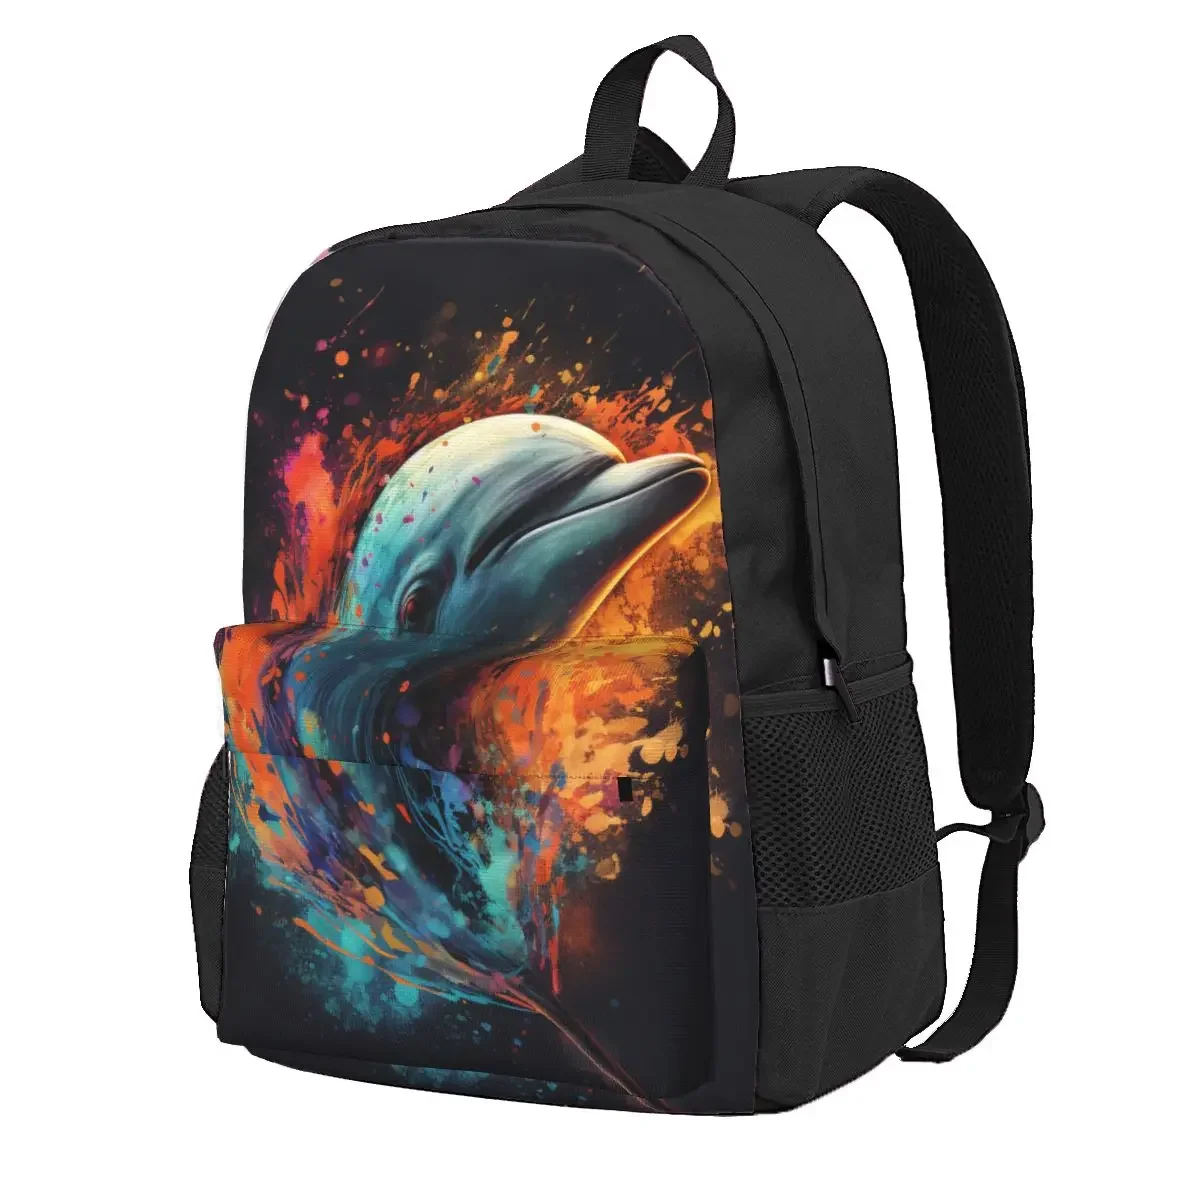 

Рюкзак для мальчиков и девочек с изображением дельфина, с головой животного, с разноцветным рисунком пламени, уличная одежда, качественные ранцы для старших классов